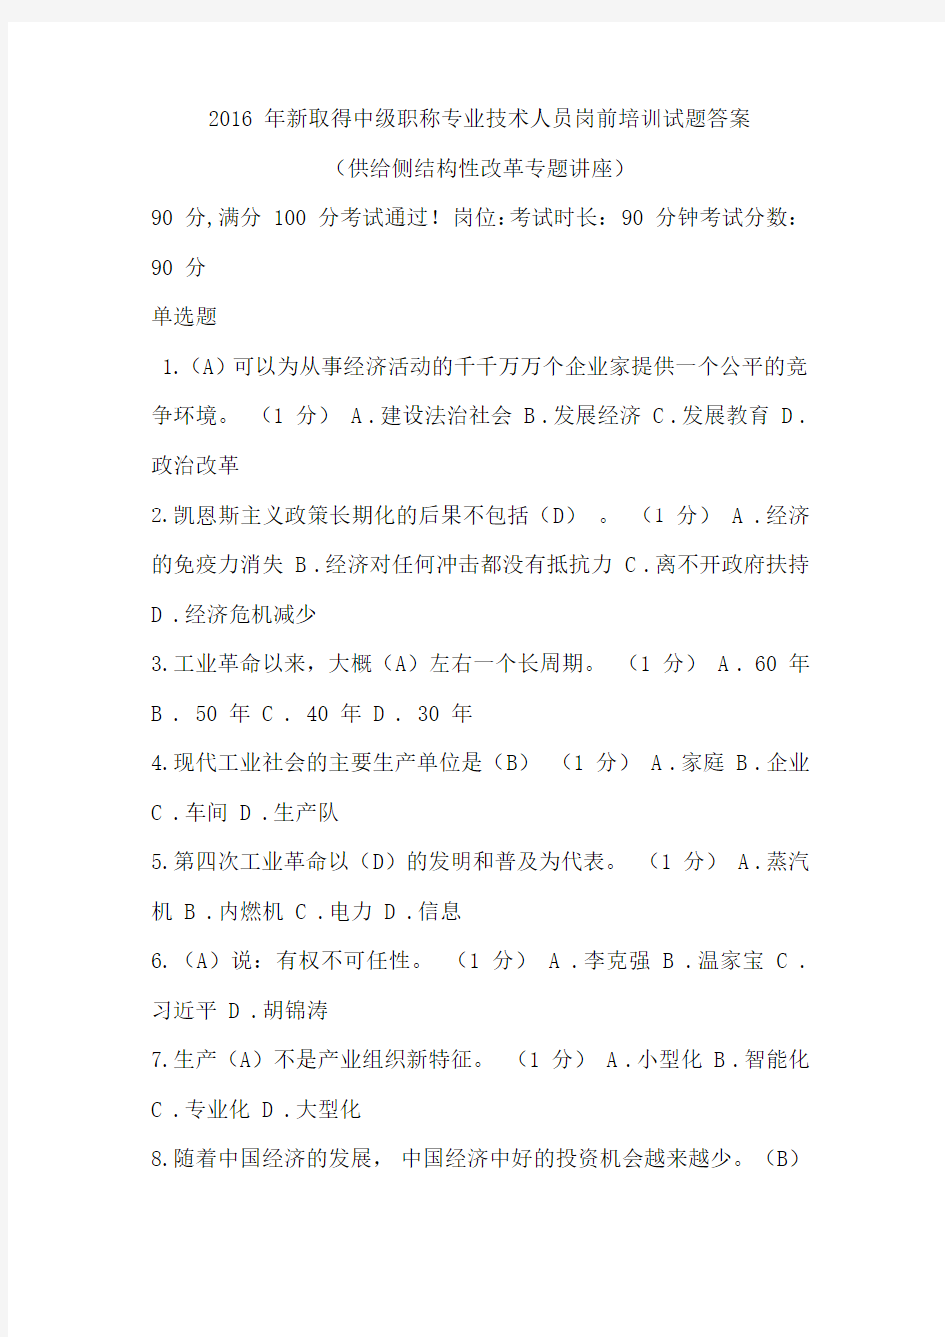 2016 年重庆市新取得中级职称专业技术人员岗前培训试题答案(供给侧结构性改革专题讲座)